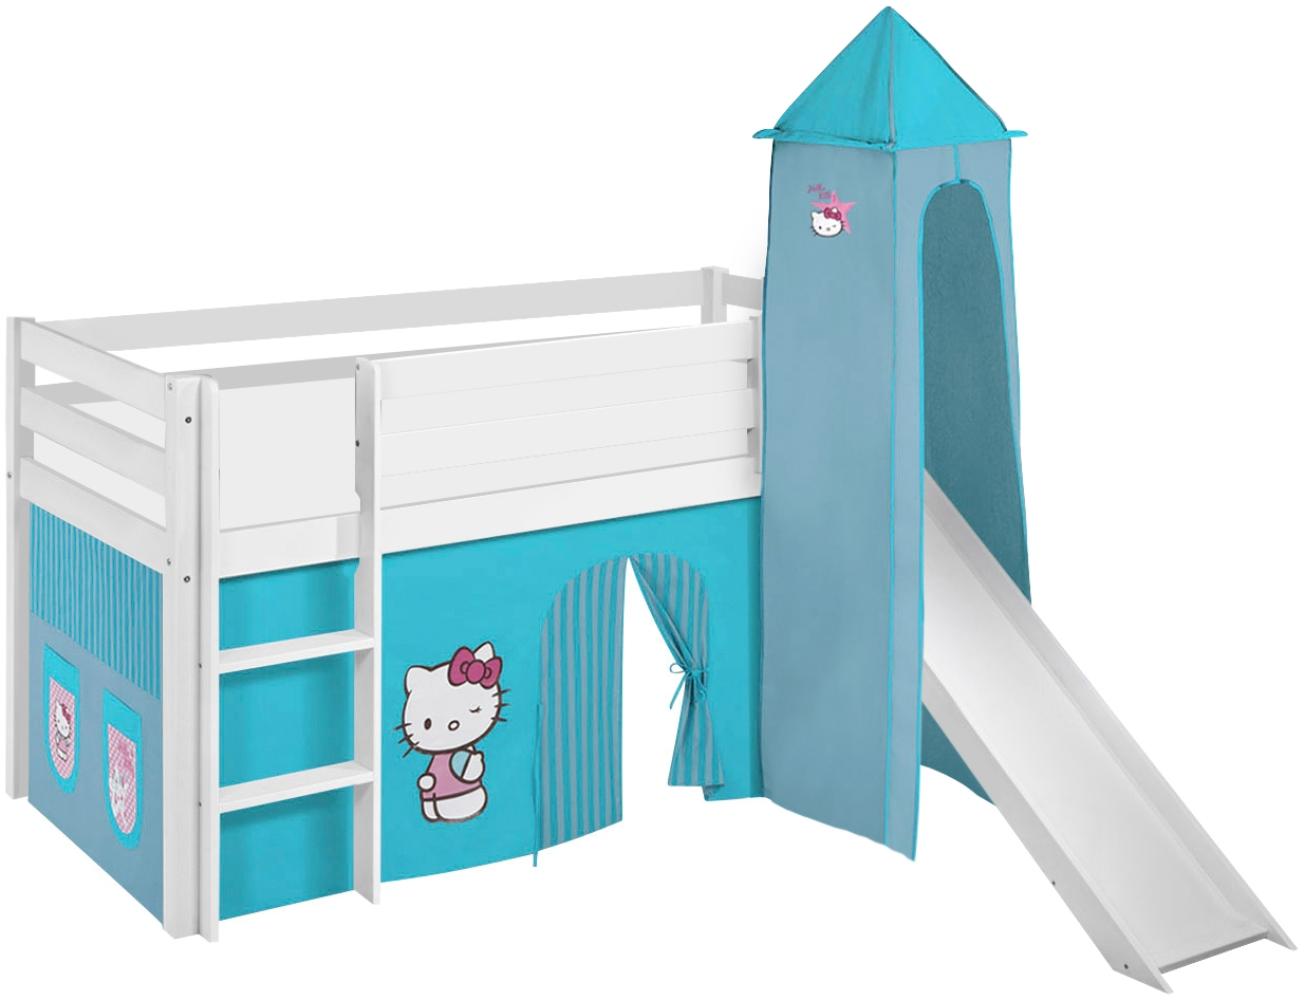 Lilokids 'Jelle' Spielbett 90 x 190 cm, Hello Kitty Türkis, Kiefer massiv, mit Turm, Rutsche und Vorhang Bild 1